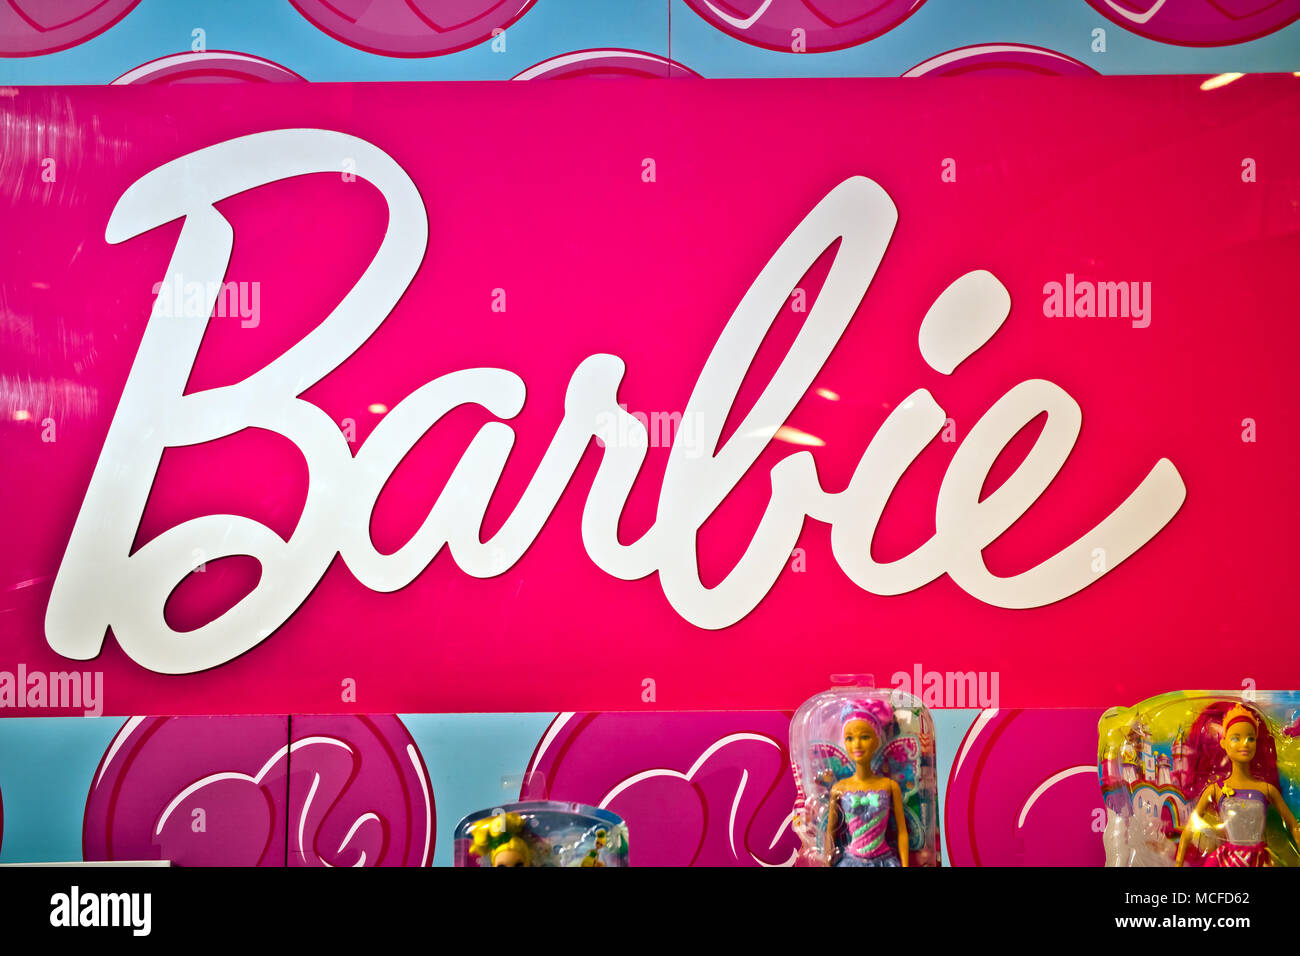 Barbie anmelden Hamleys speichern. Barbie ist ein fashion Doll durch die amerikanische Spielzeugfirma Mattel hergestellt Stockfoto